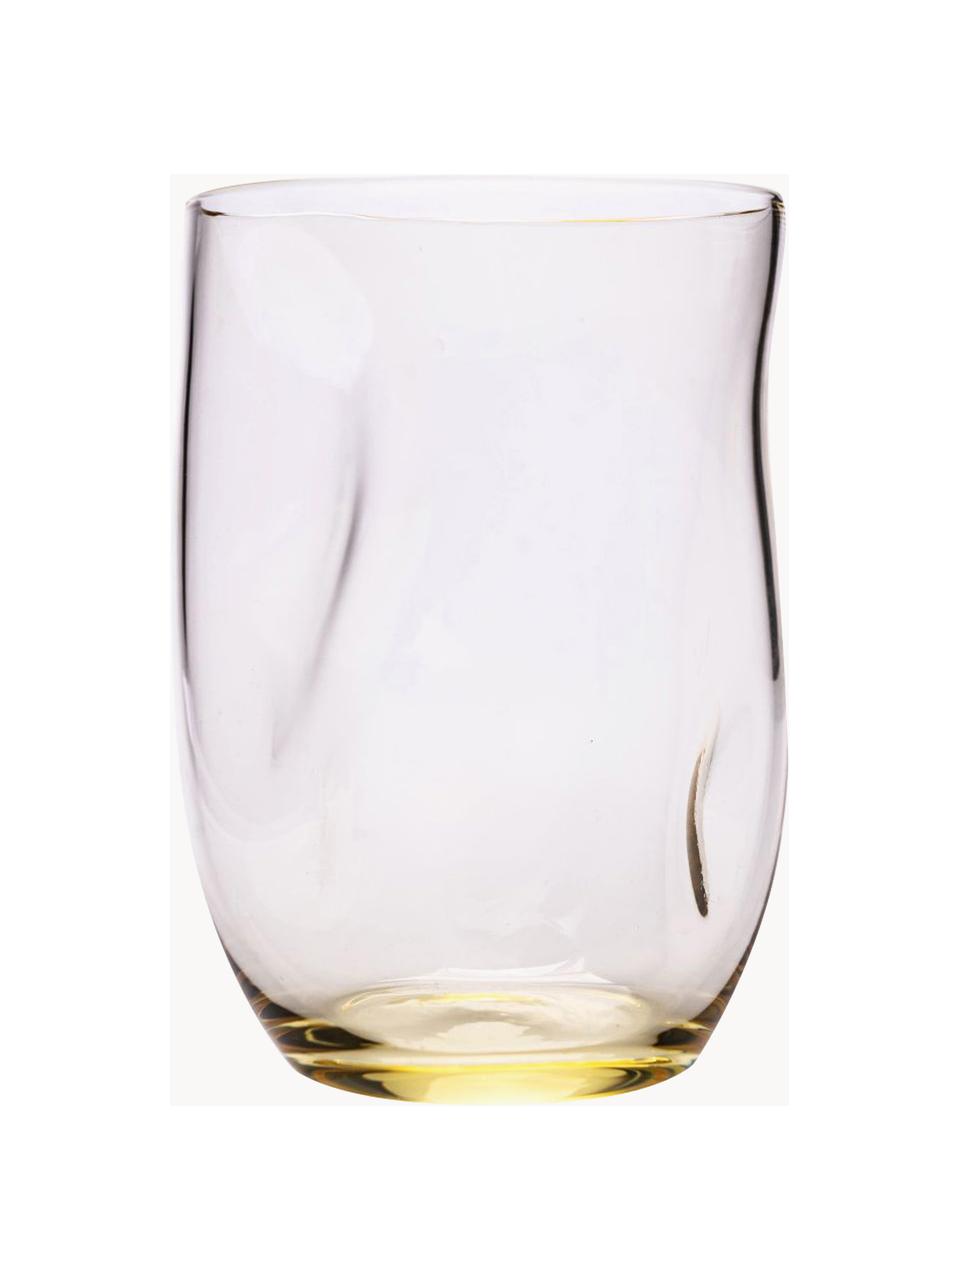 Bicchieri per acqua fatti a mano dalla forma organica Squeeze 6 pz, Vetro, Giallo limone, Ø 7 x Alt. 10 cm, 250 ml